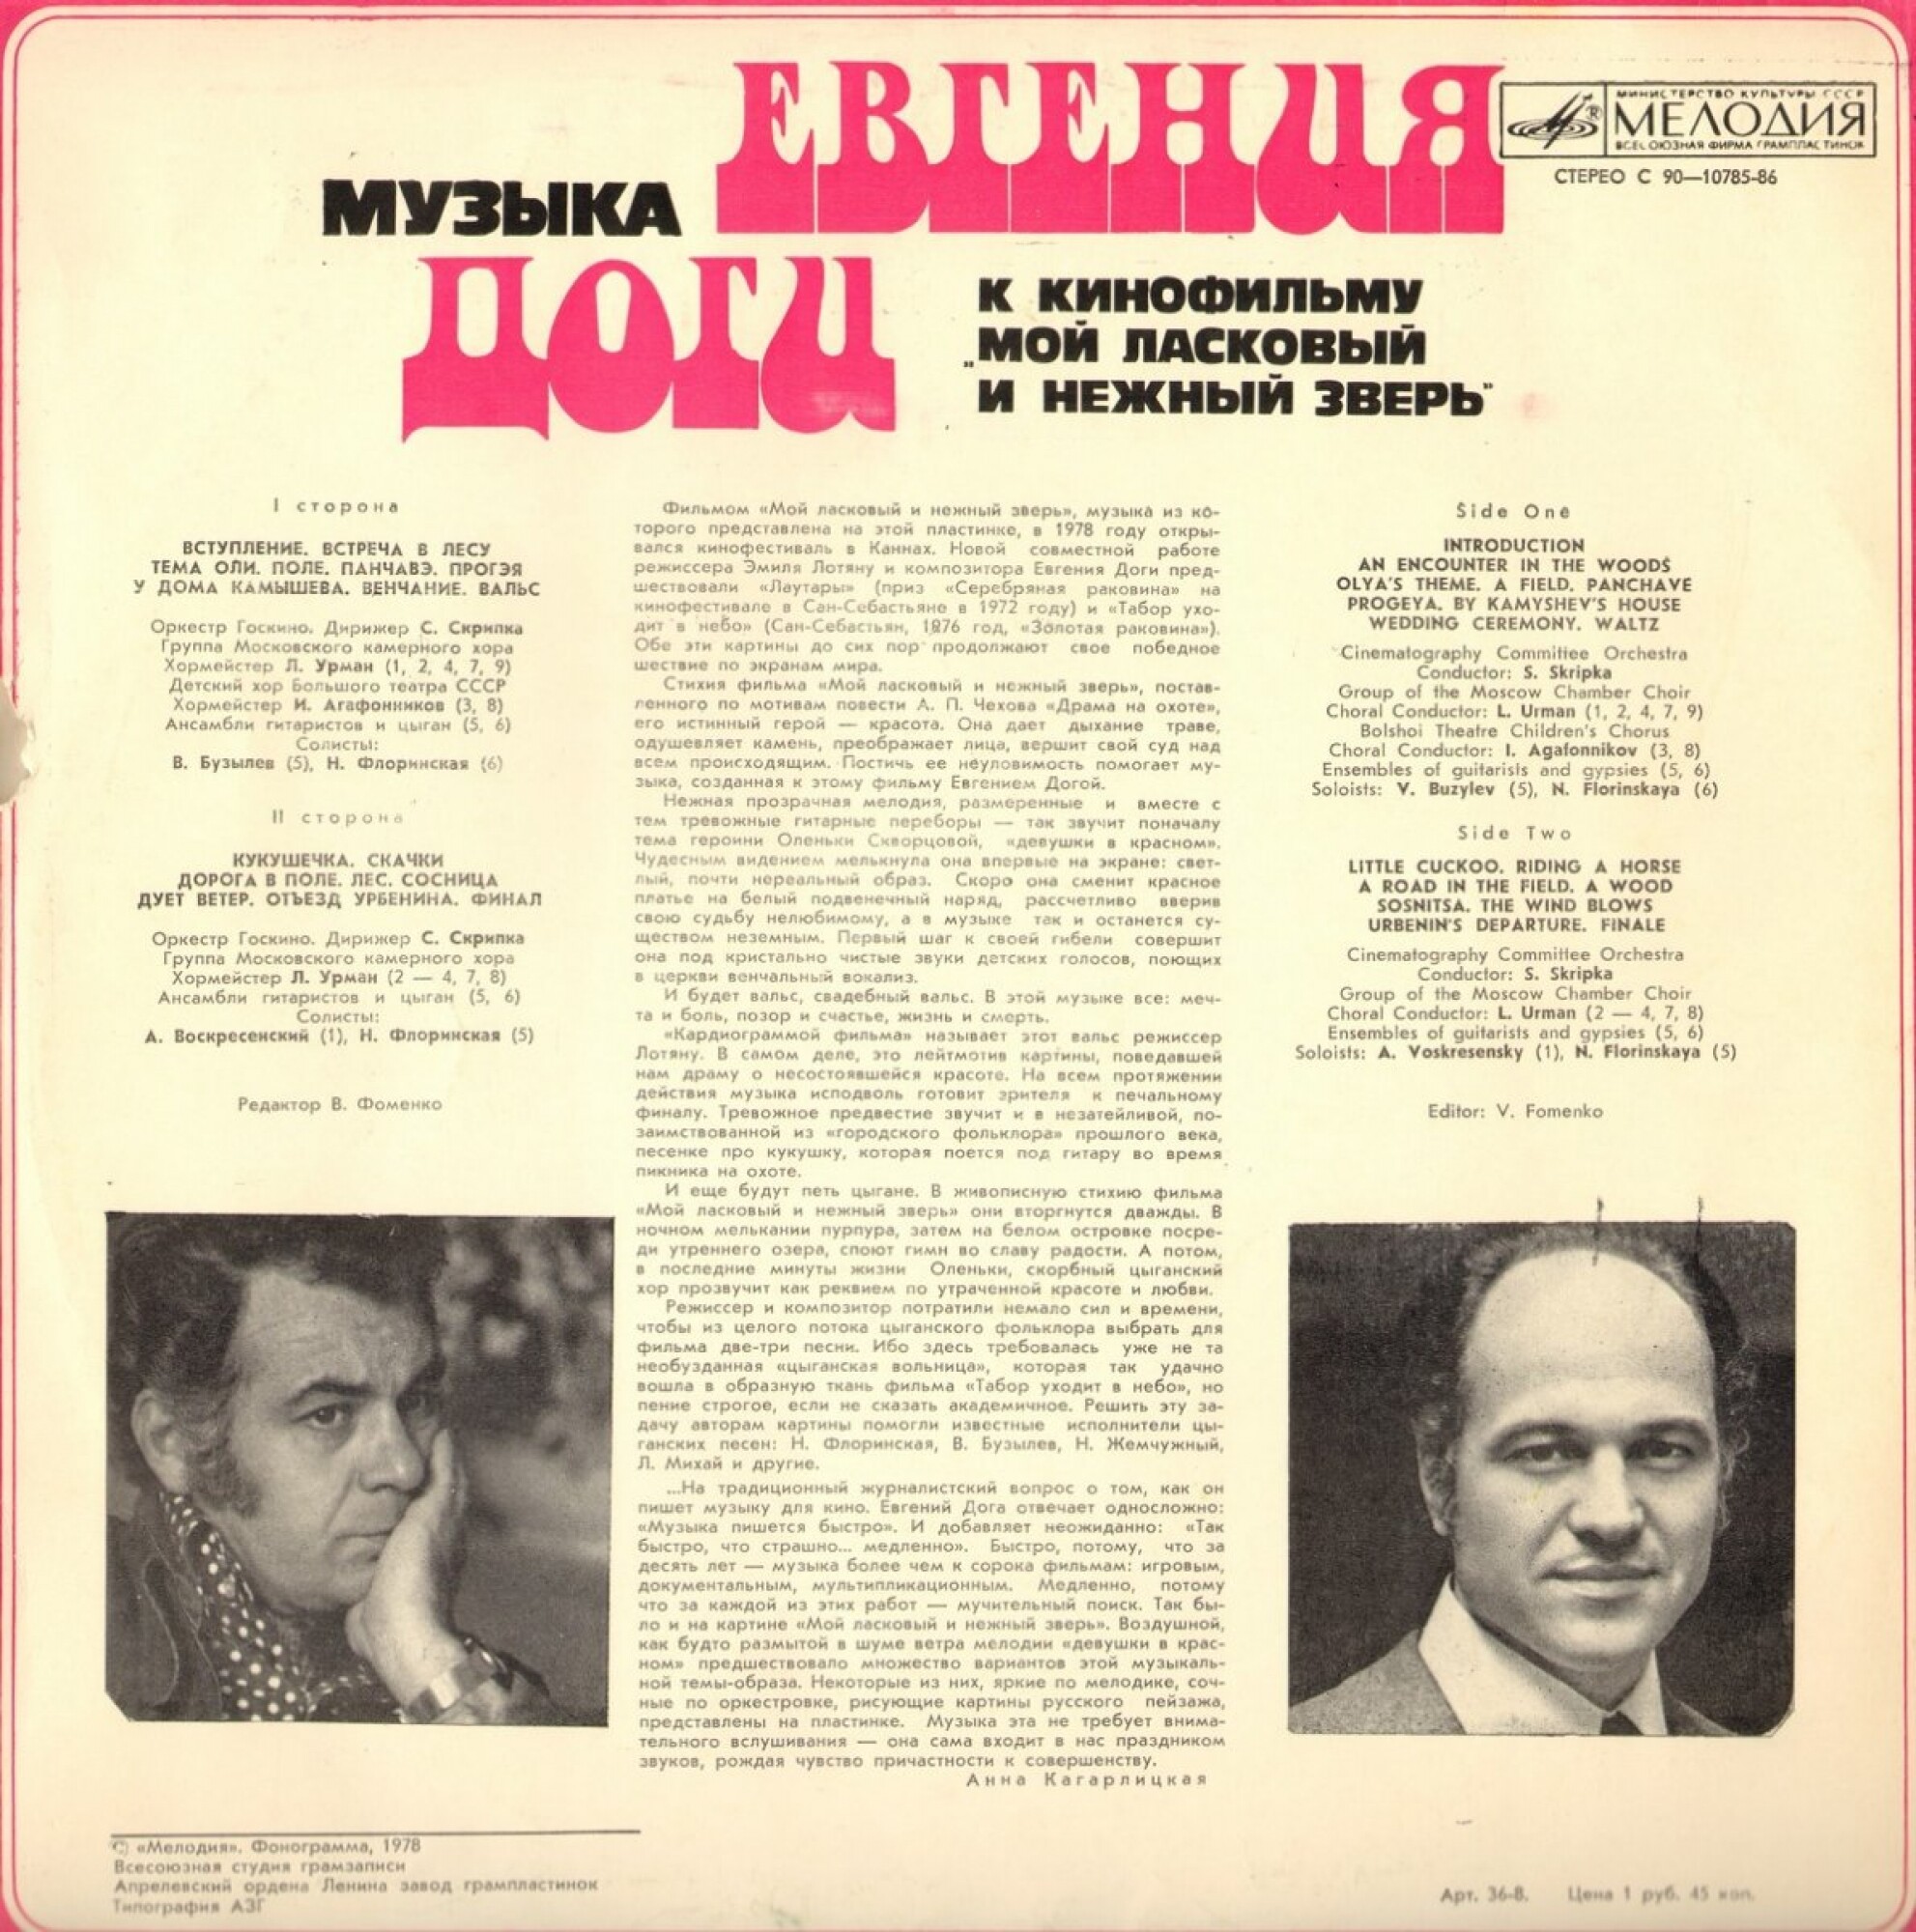 Е. ДОГА (р. 1937) Музыка к кинофильму «Мой ласковый и нежный зверь»